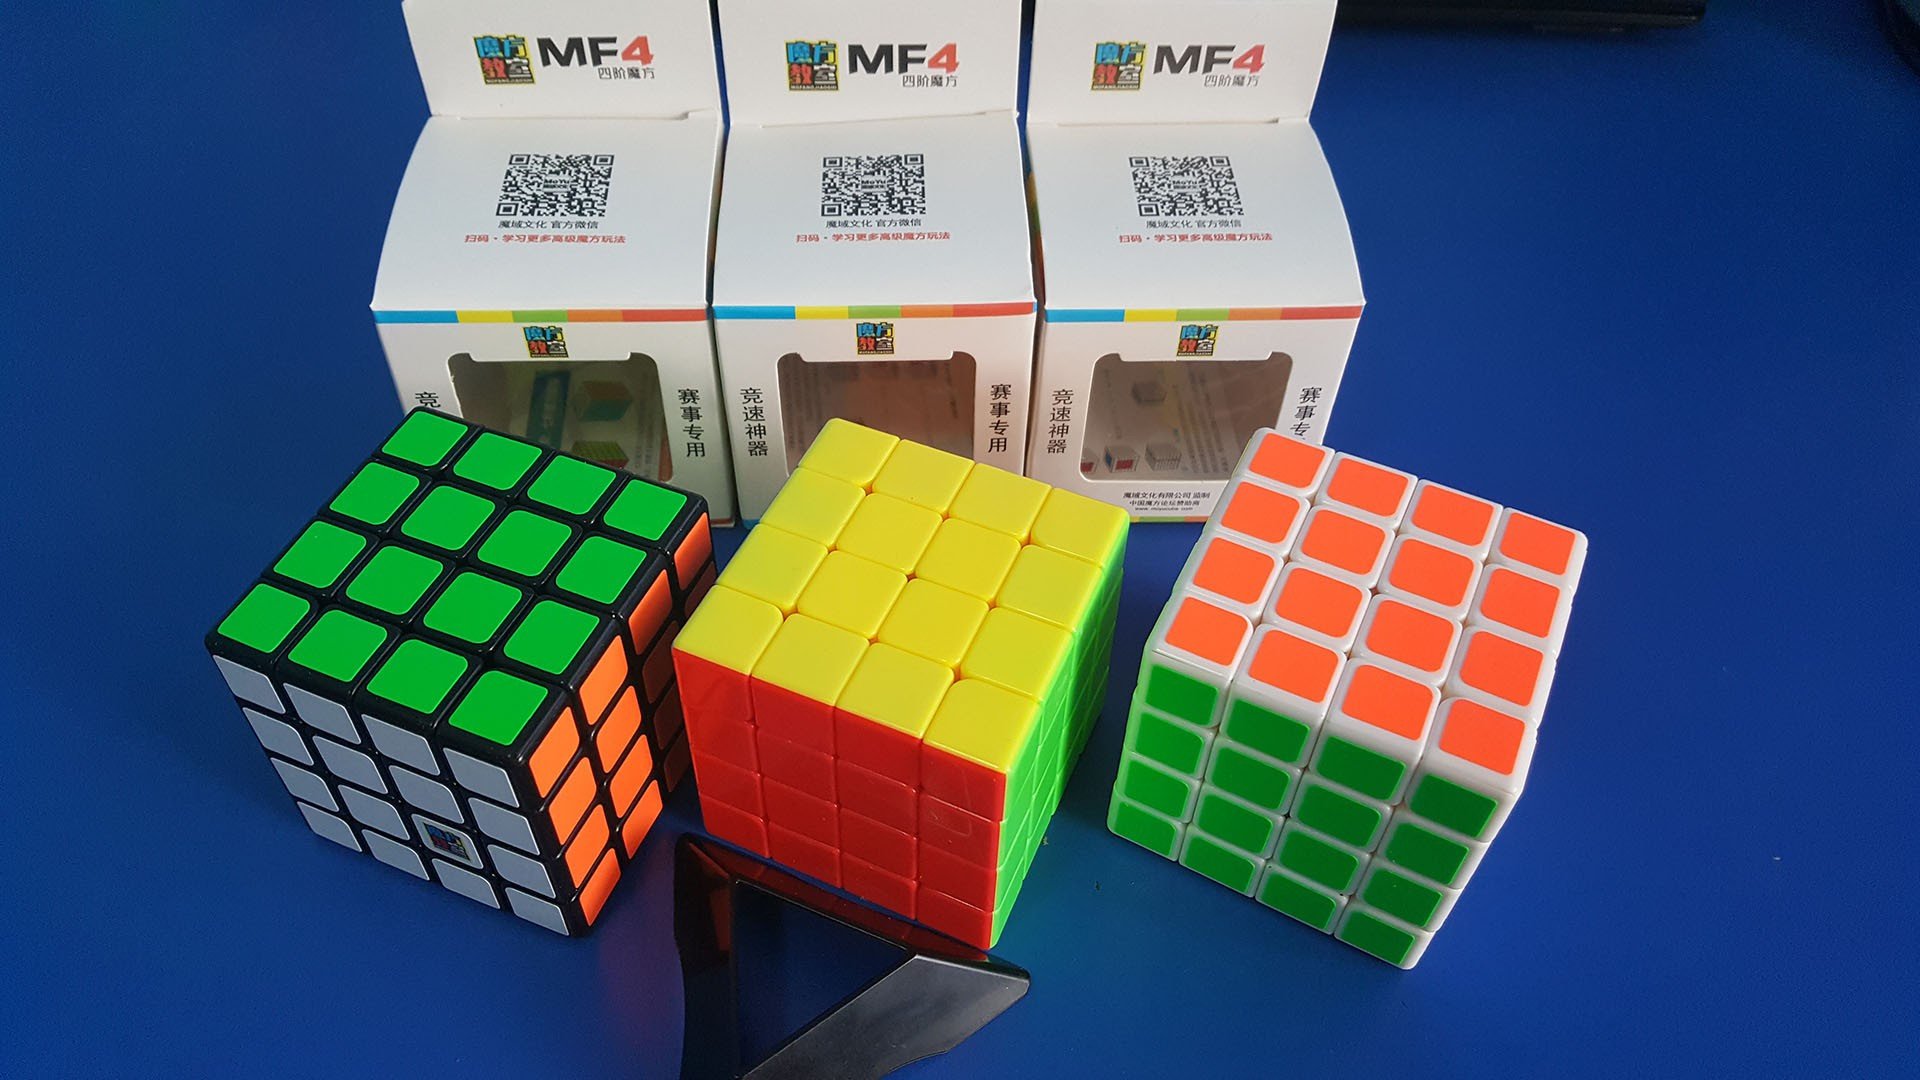 Hướng dẫn cơ hội giải Rubik 4x4 cơ bản